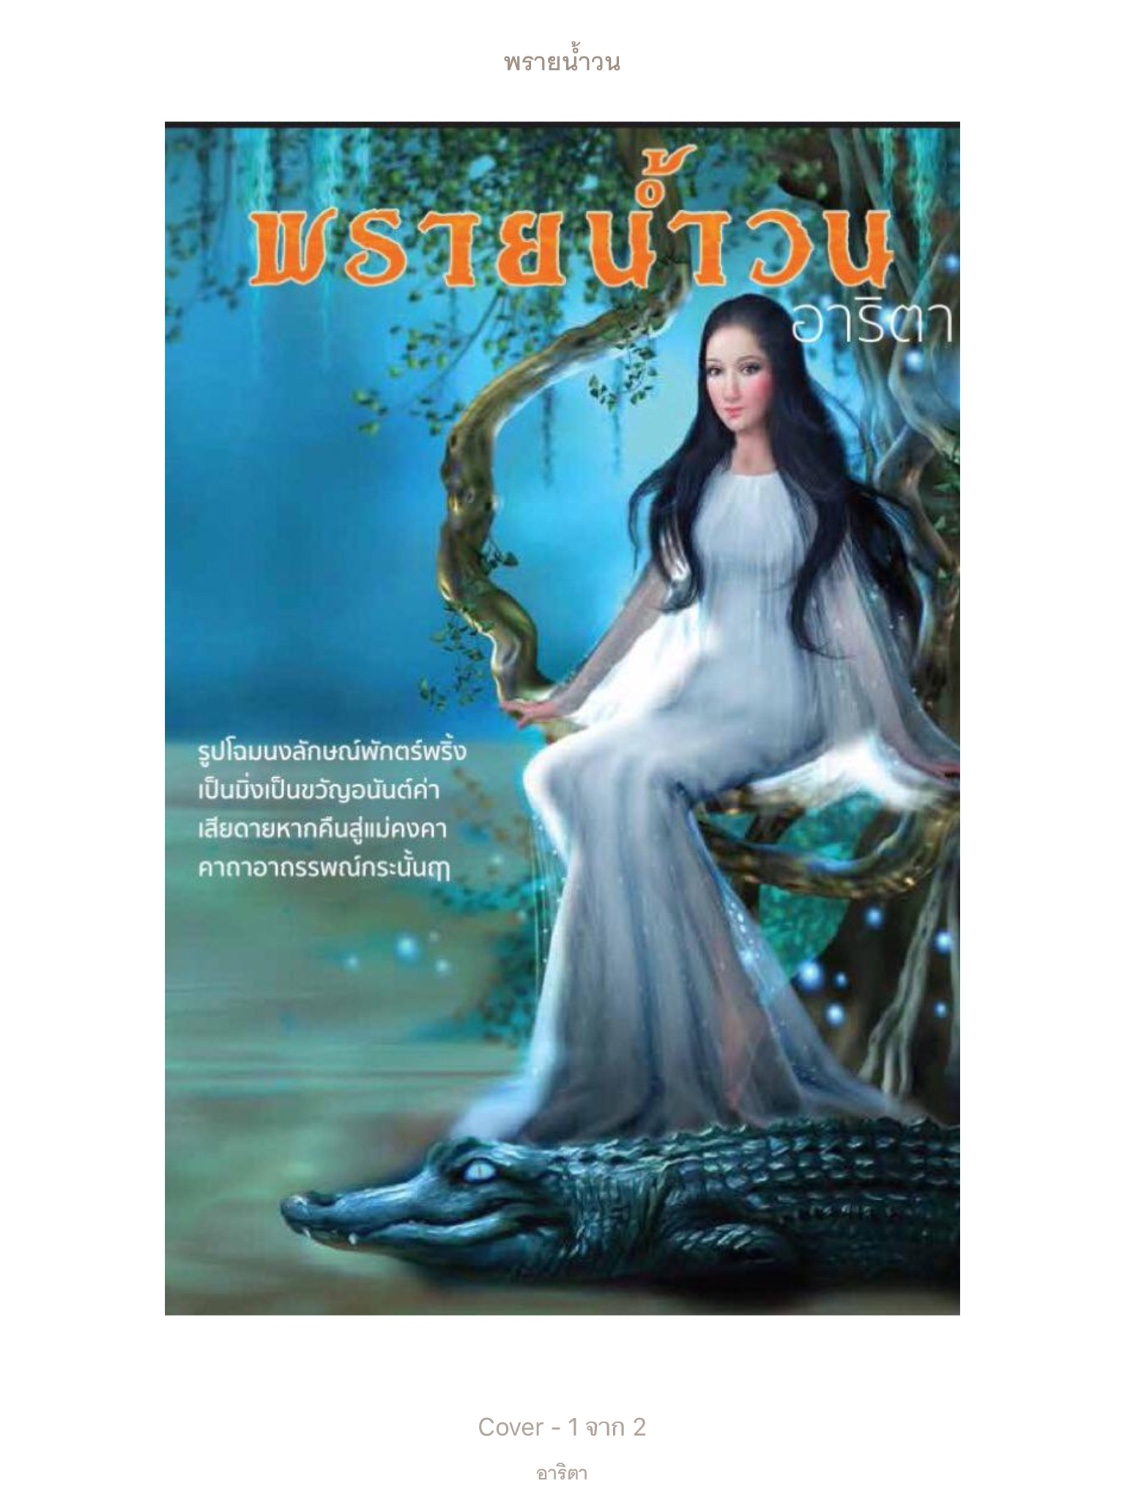 แนะนำนิยายไทยแนวเหนือธรรมชาติที่แต่งได้ดี แต่นักอ่านไม่รู้จัก